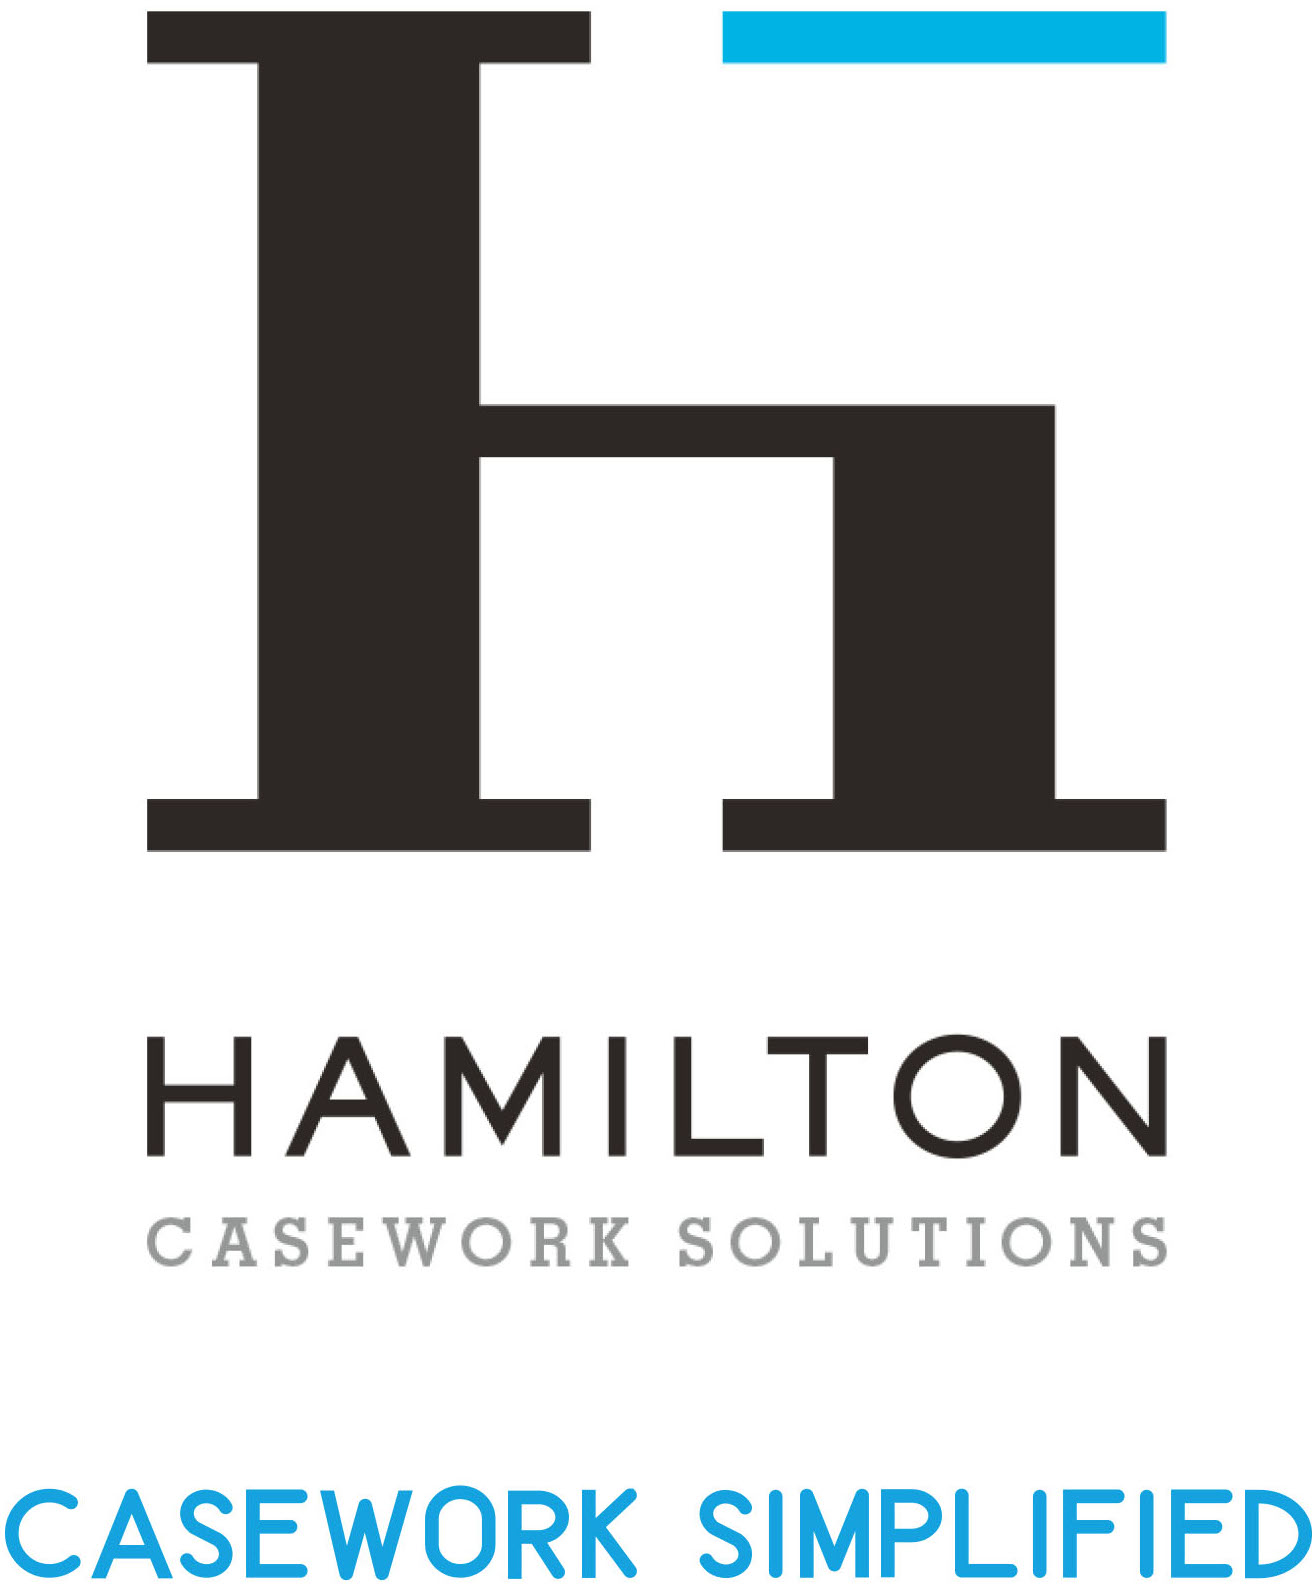 Hamilton Casework Solutions